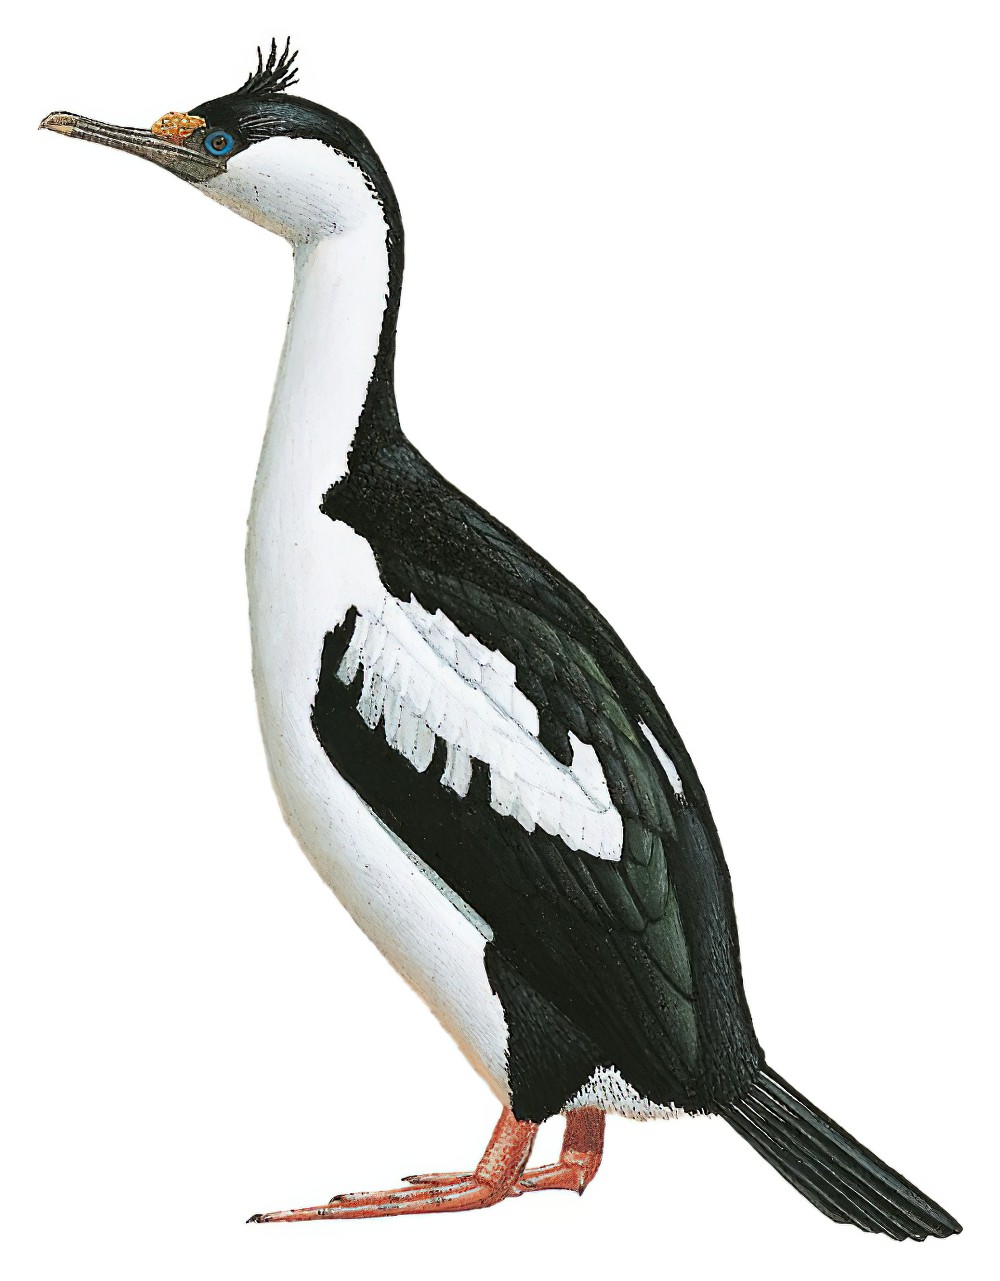 Heard Island Shag / Phalacrocorax nivalis